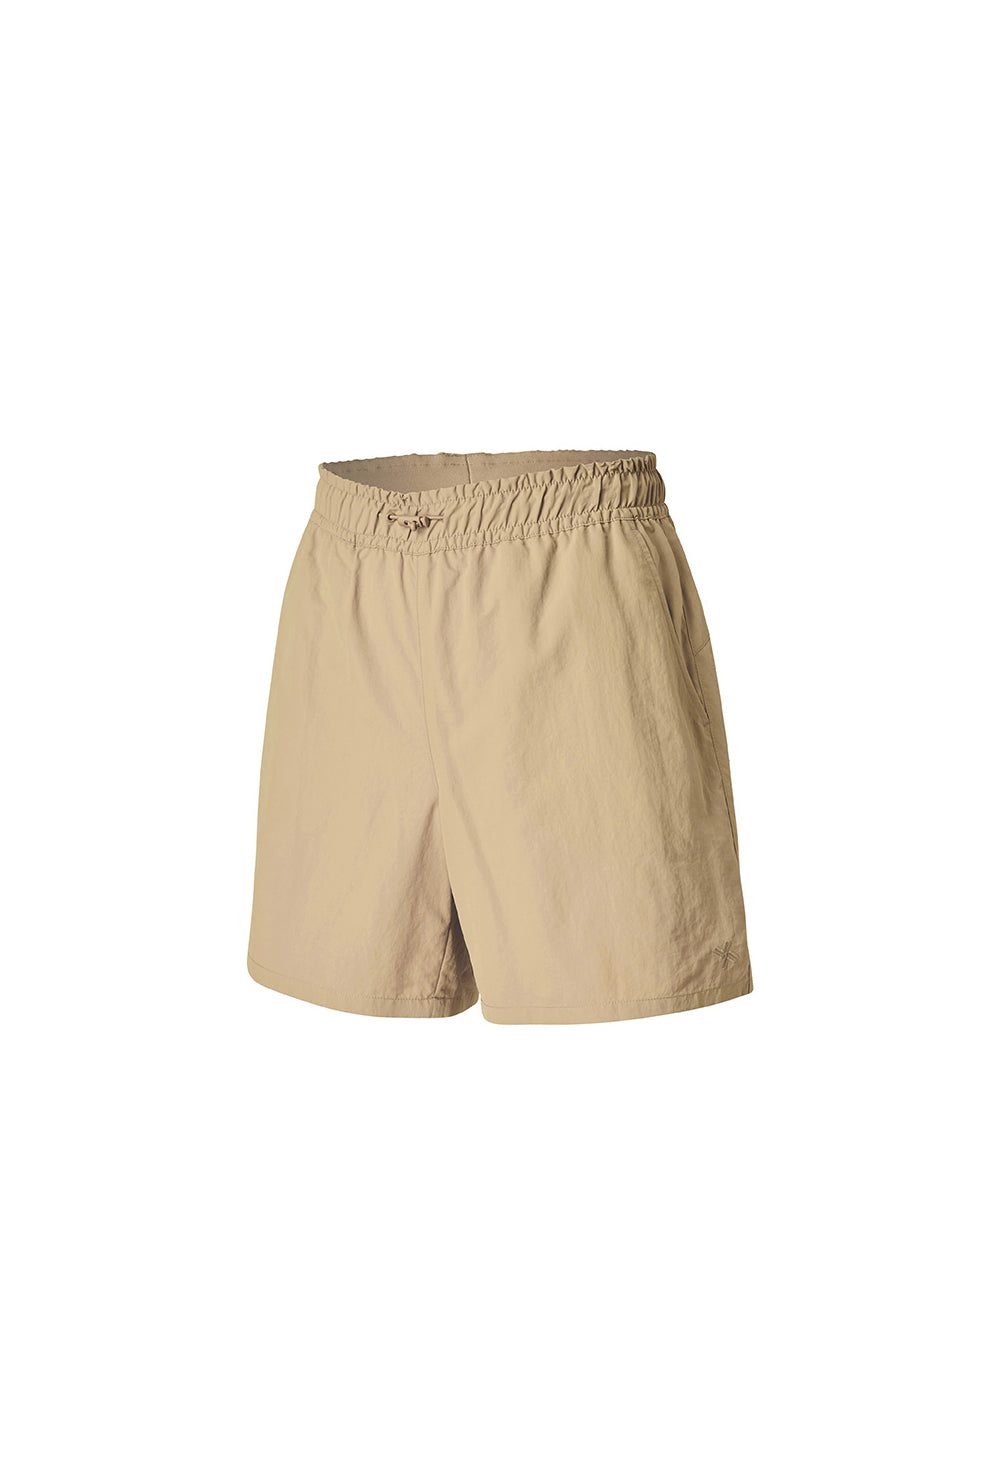 Basic Woven Half Shorts - Safari Sand (Clearance)